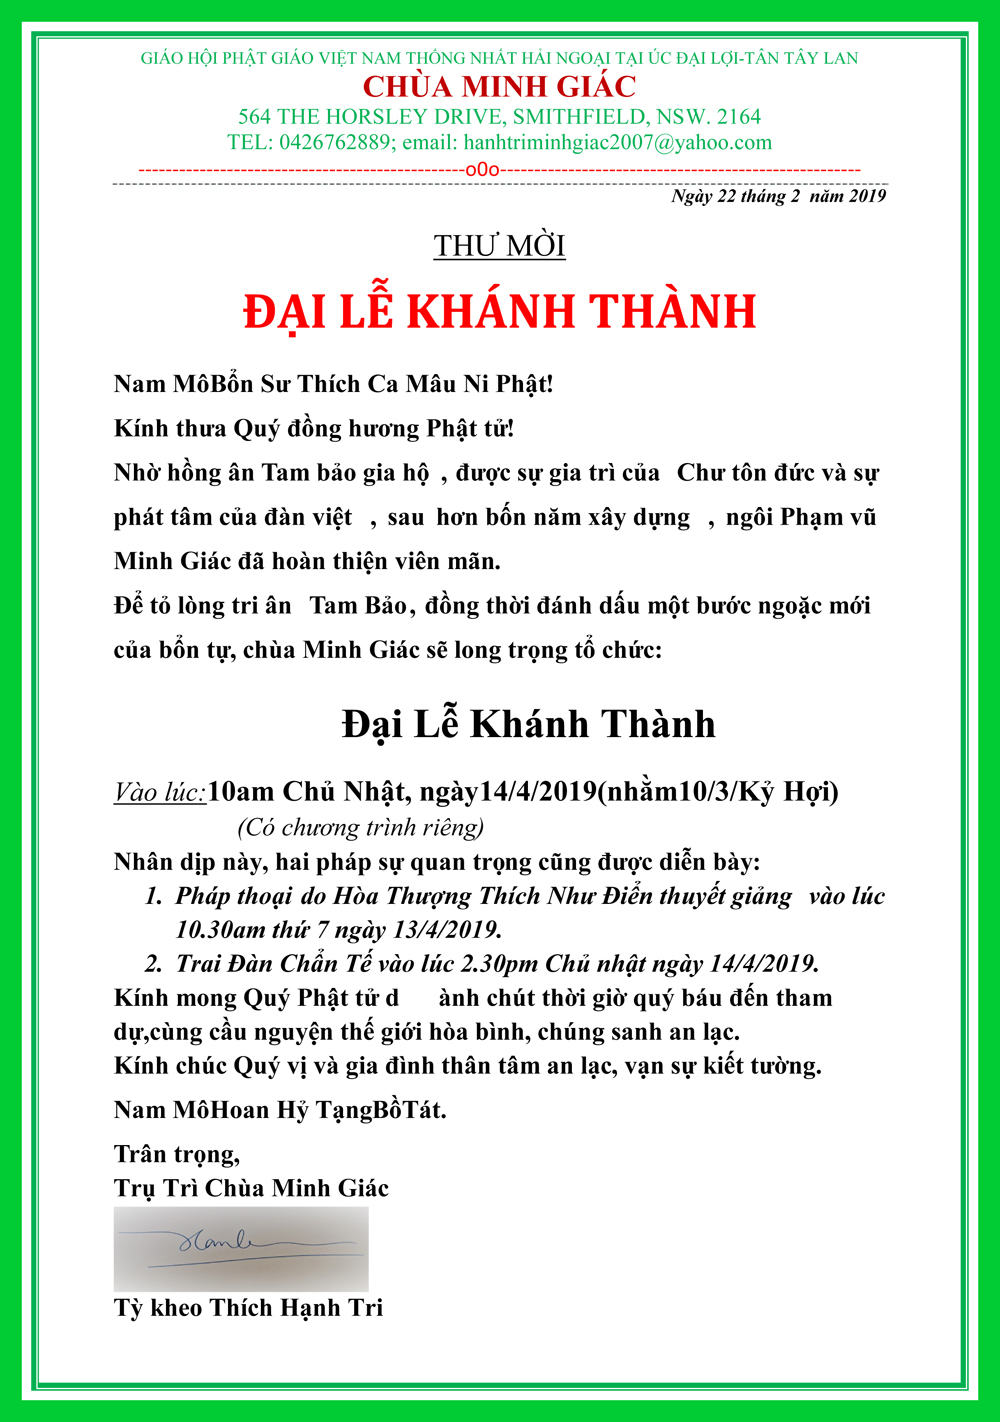 Le Khanh Thanh_Chua Minh Giac